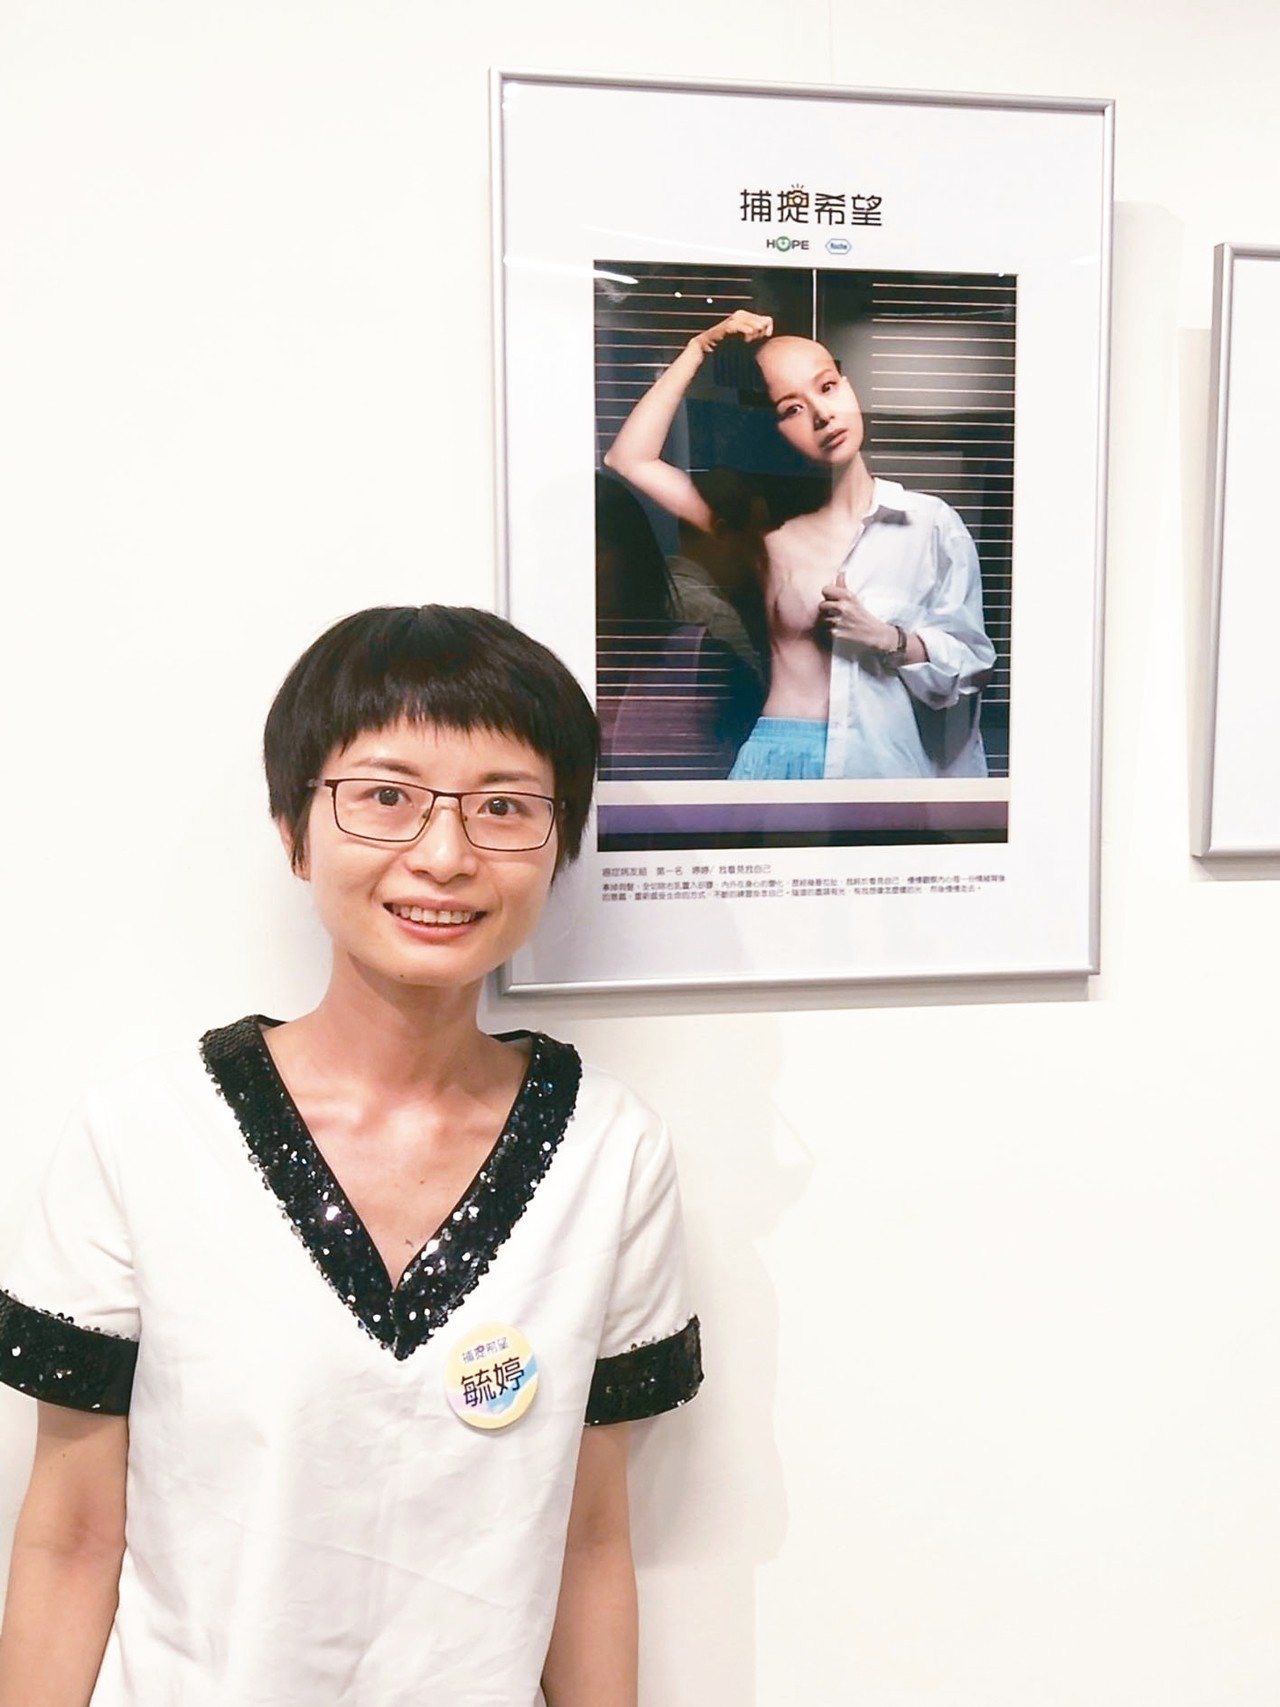 乳癌病友邱毓婷以「我看見我自己」獲得2019「捕捉希望」攝影比賽首獎。